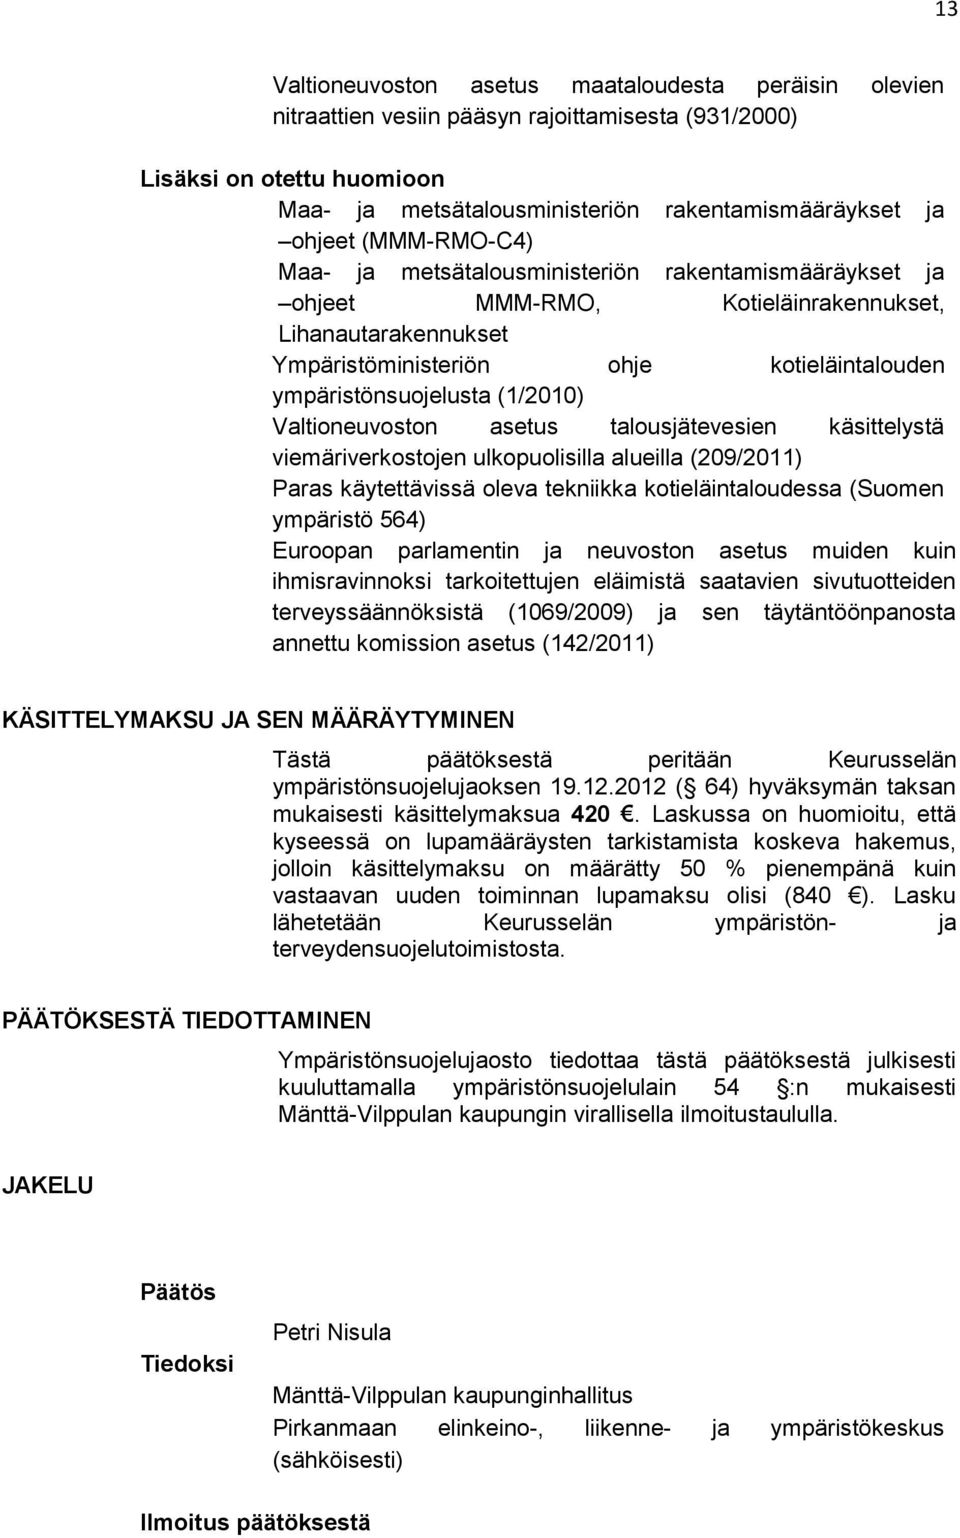 (1/2010) Valtioneuvoston asetus talousjätevesien käsittelystä viemäriverkostojen ulkopuolisilla alueilla (209/2011) Paras käytettävissä oleva tekniikka kotieläintaloudessa (Suomen ympäristö 564)